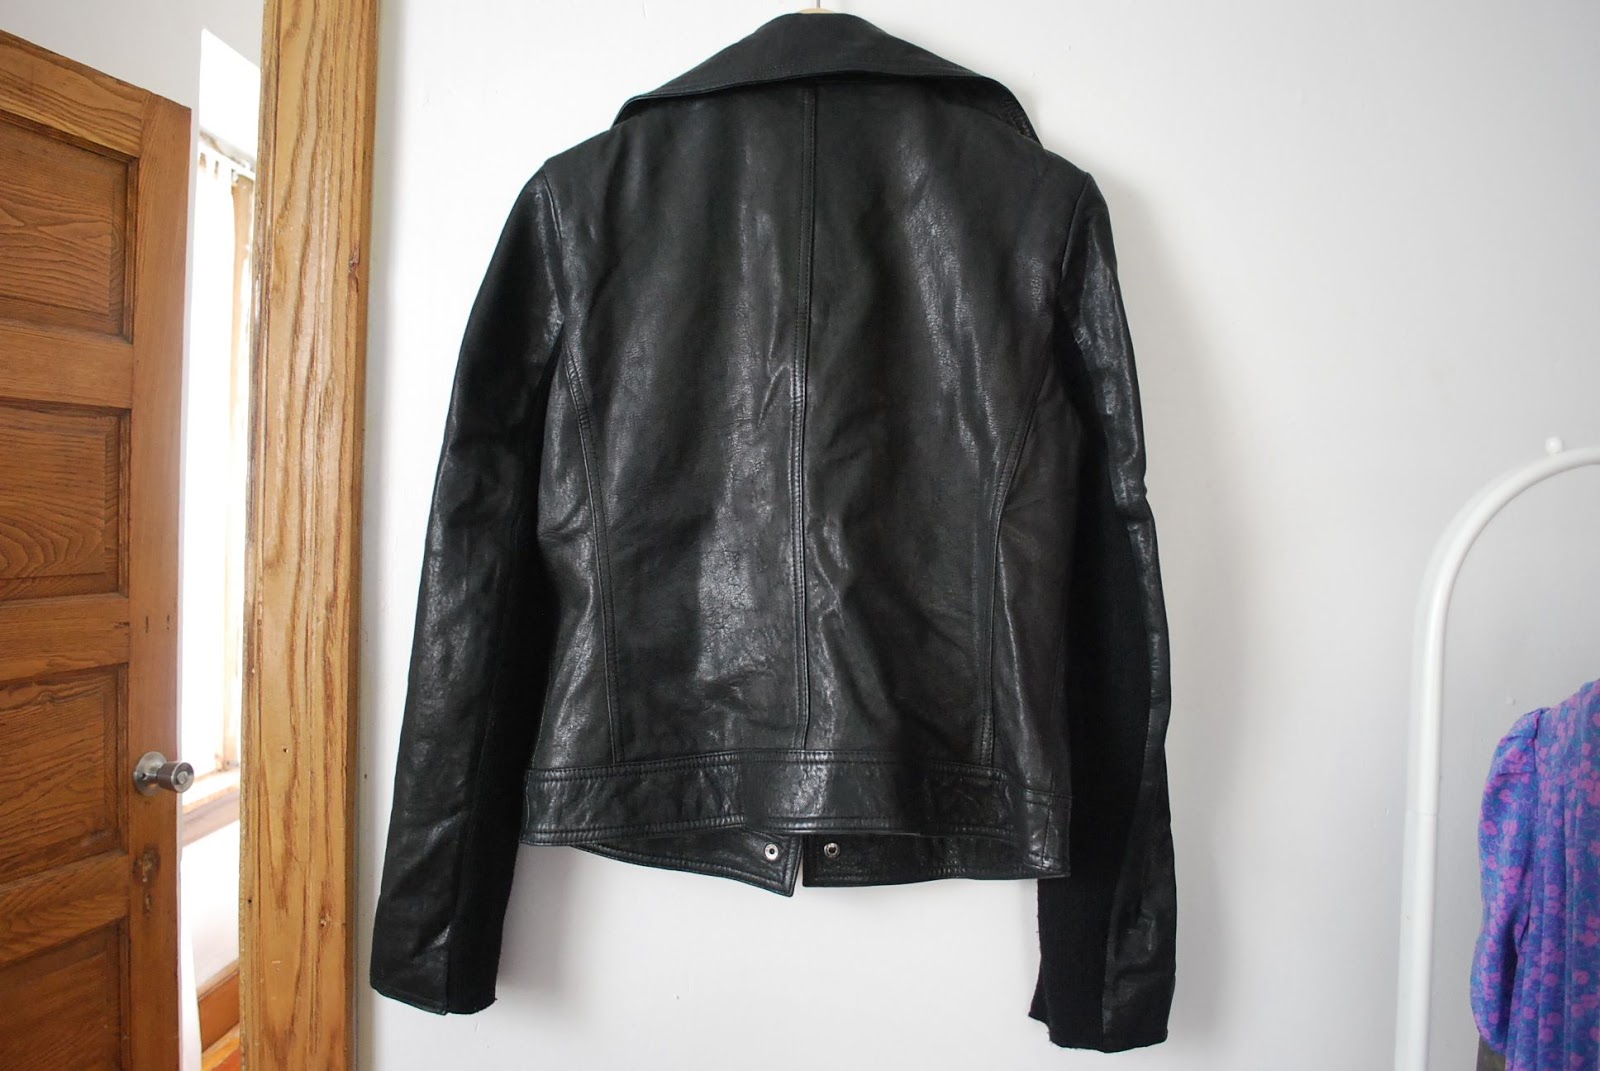 Item: Nine West leather jacket